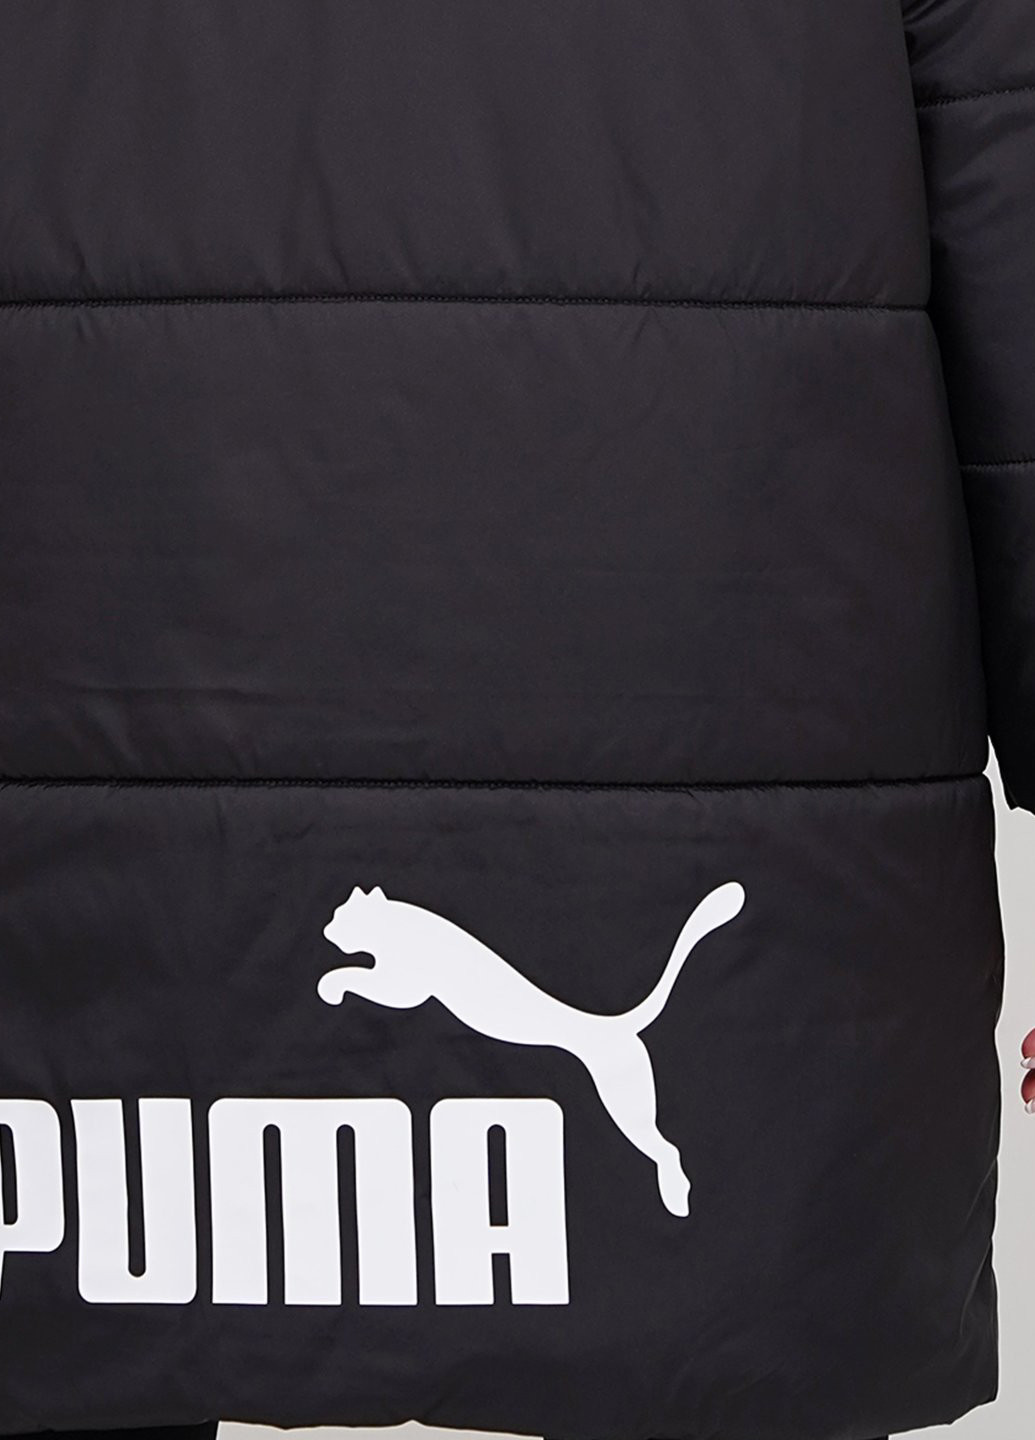 Черная зимняя куртка Puma